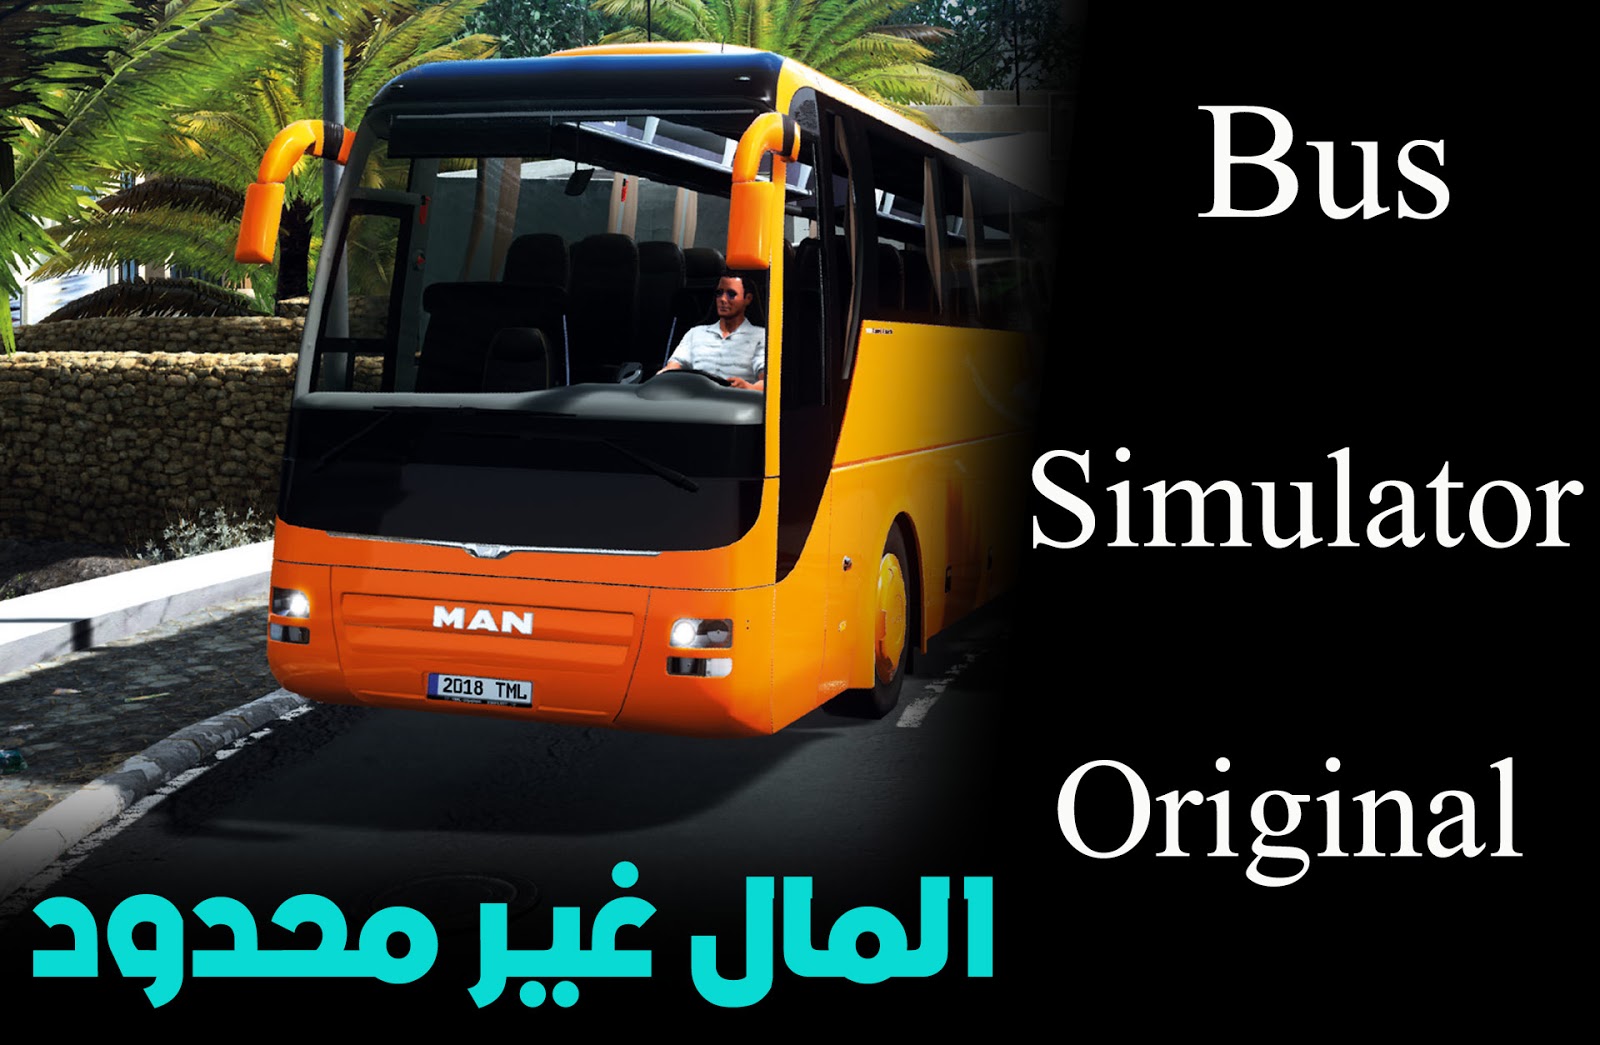   Bus Simulator Original      